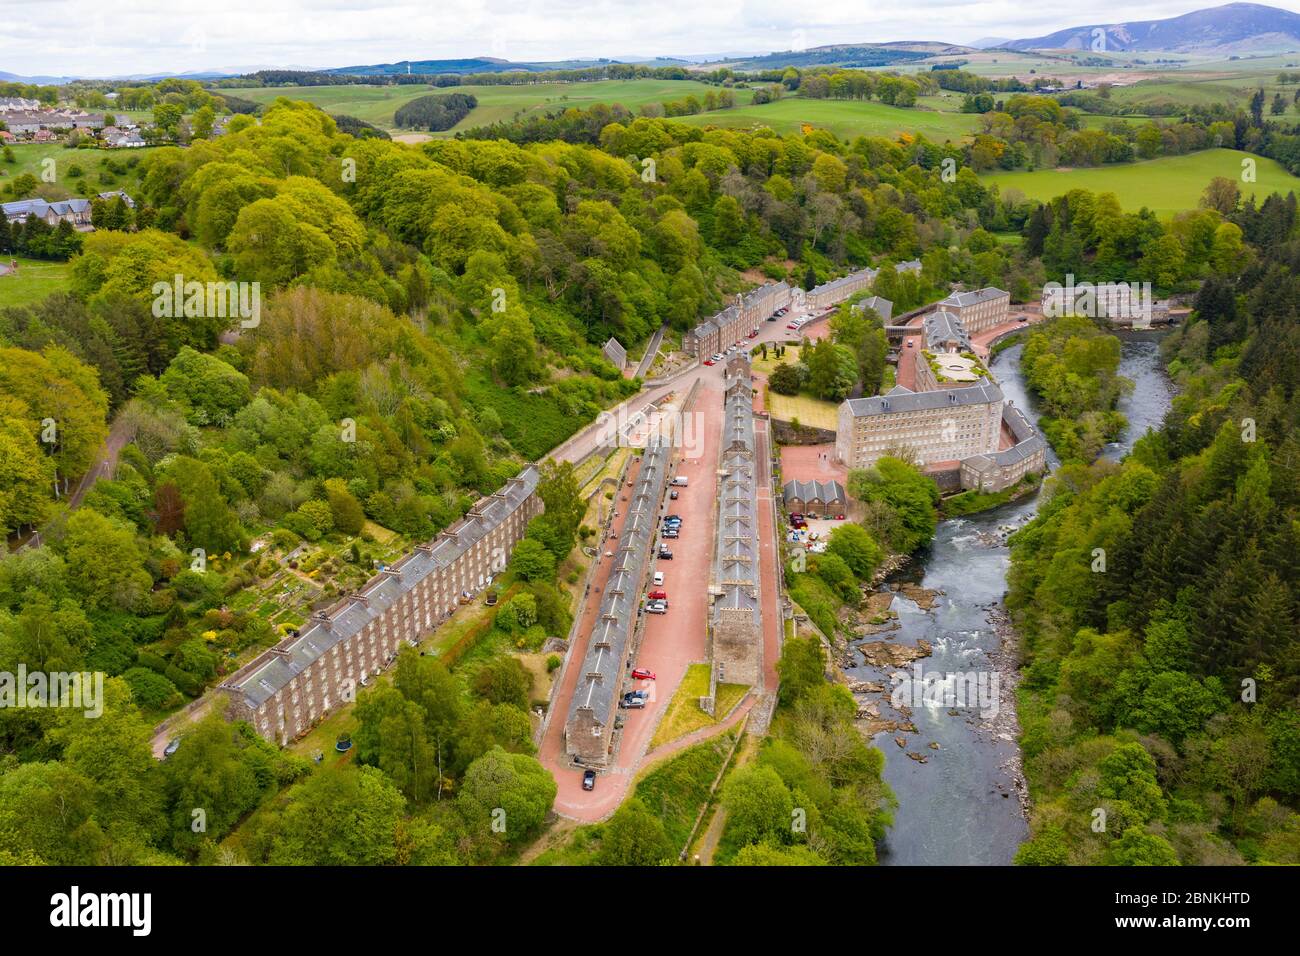 Vue aérienne du site du patrimoine mondial de New Lanark fermée pendant le confinement de la Covid-19, à côté de la rivière Clyde dans le sud du Lanarkshire, en Écosse, au Royaume-Uni Banque D'Images